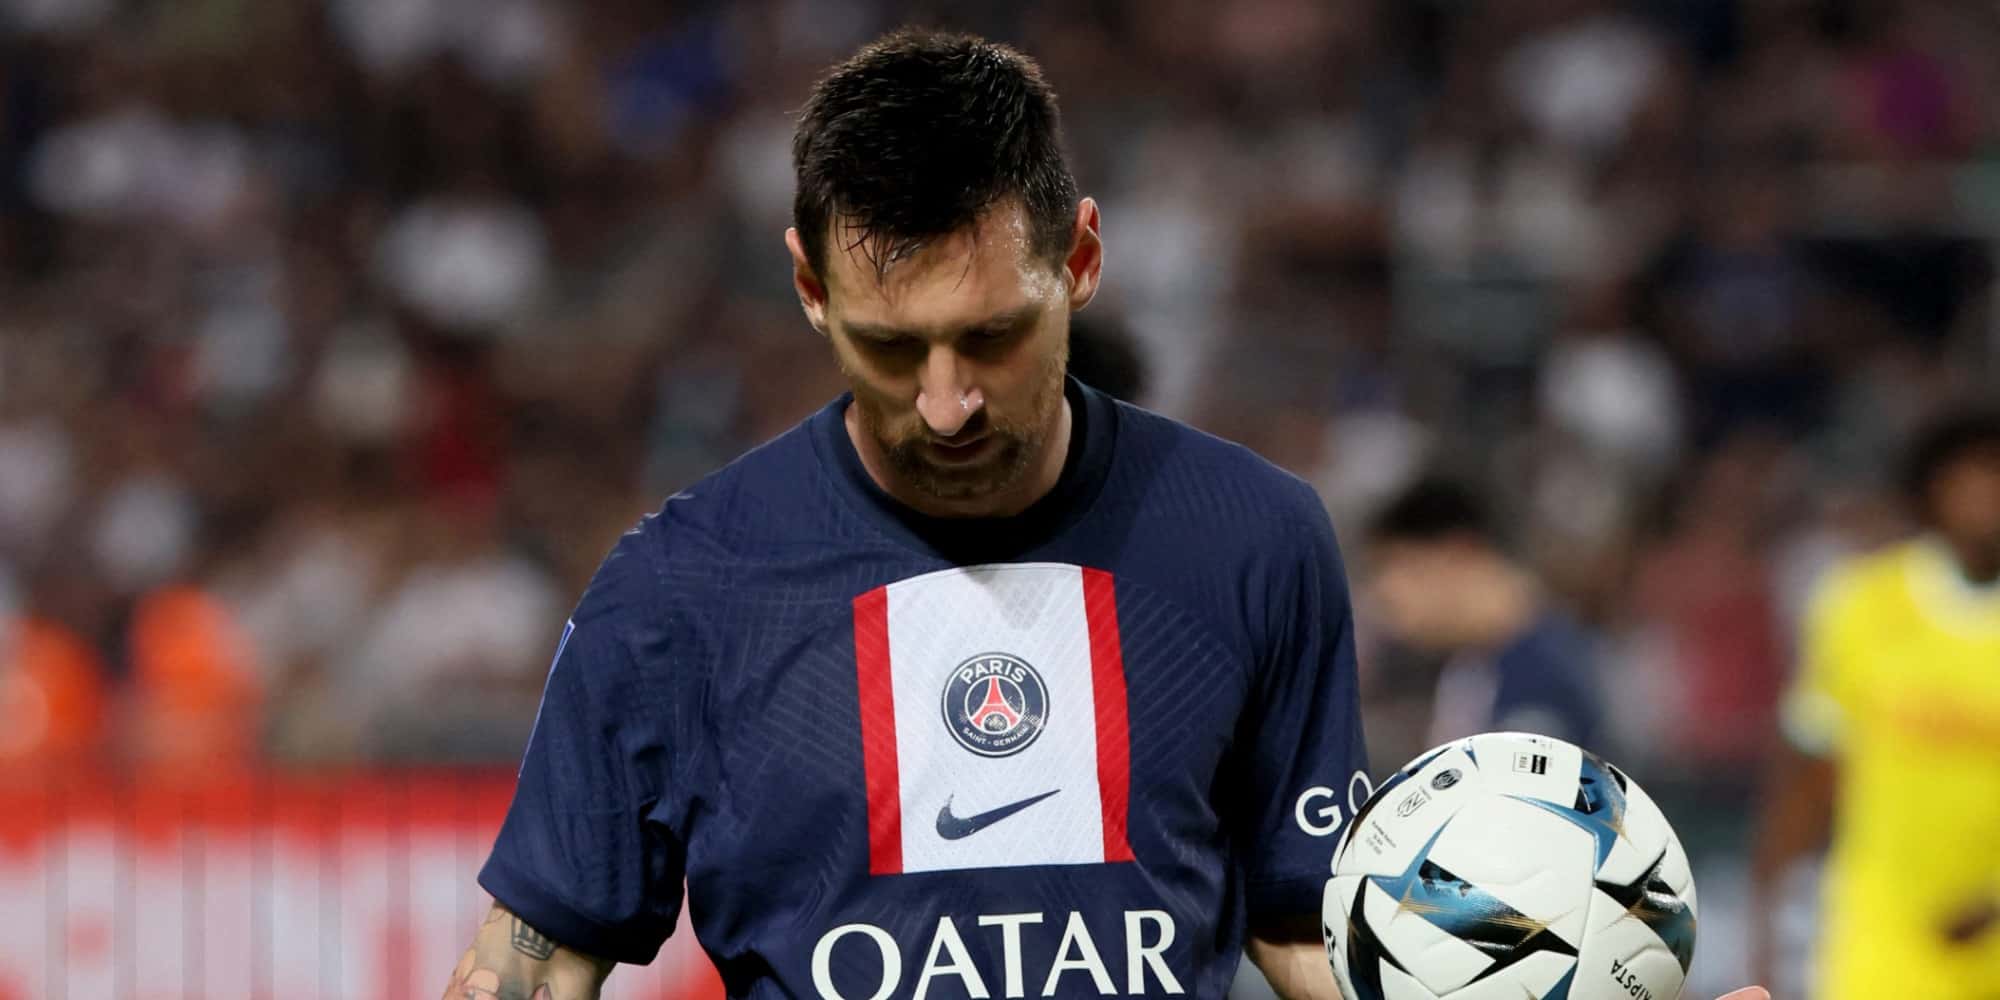 Pourquoi la suspension de deux semaines de Messi au PSG a été annulée